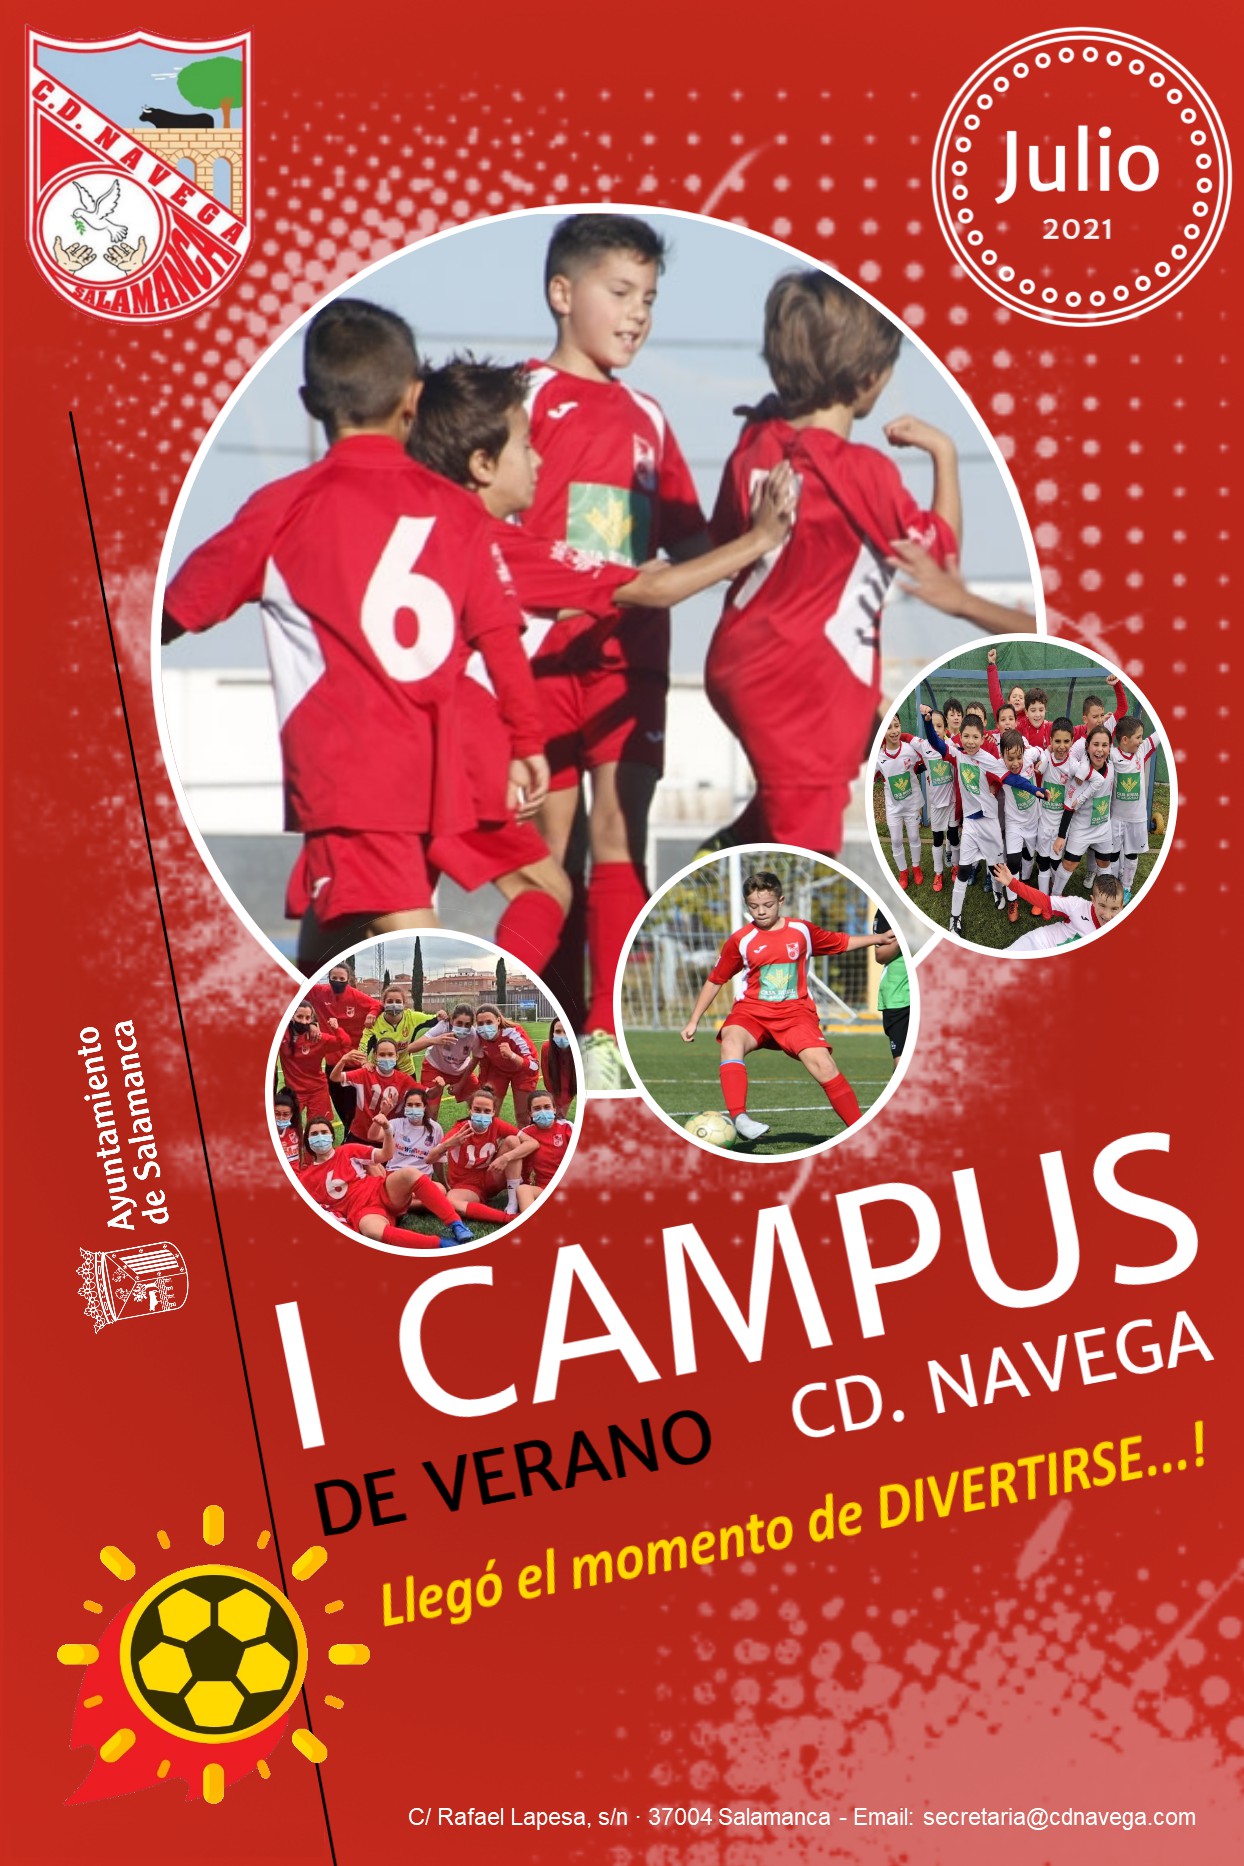 I CAMPUS DE VERANO CD.NAVEGA